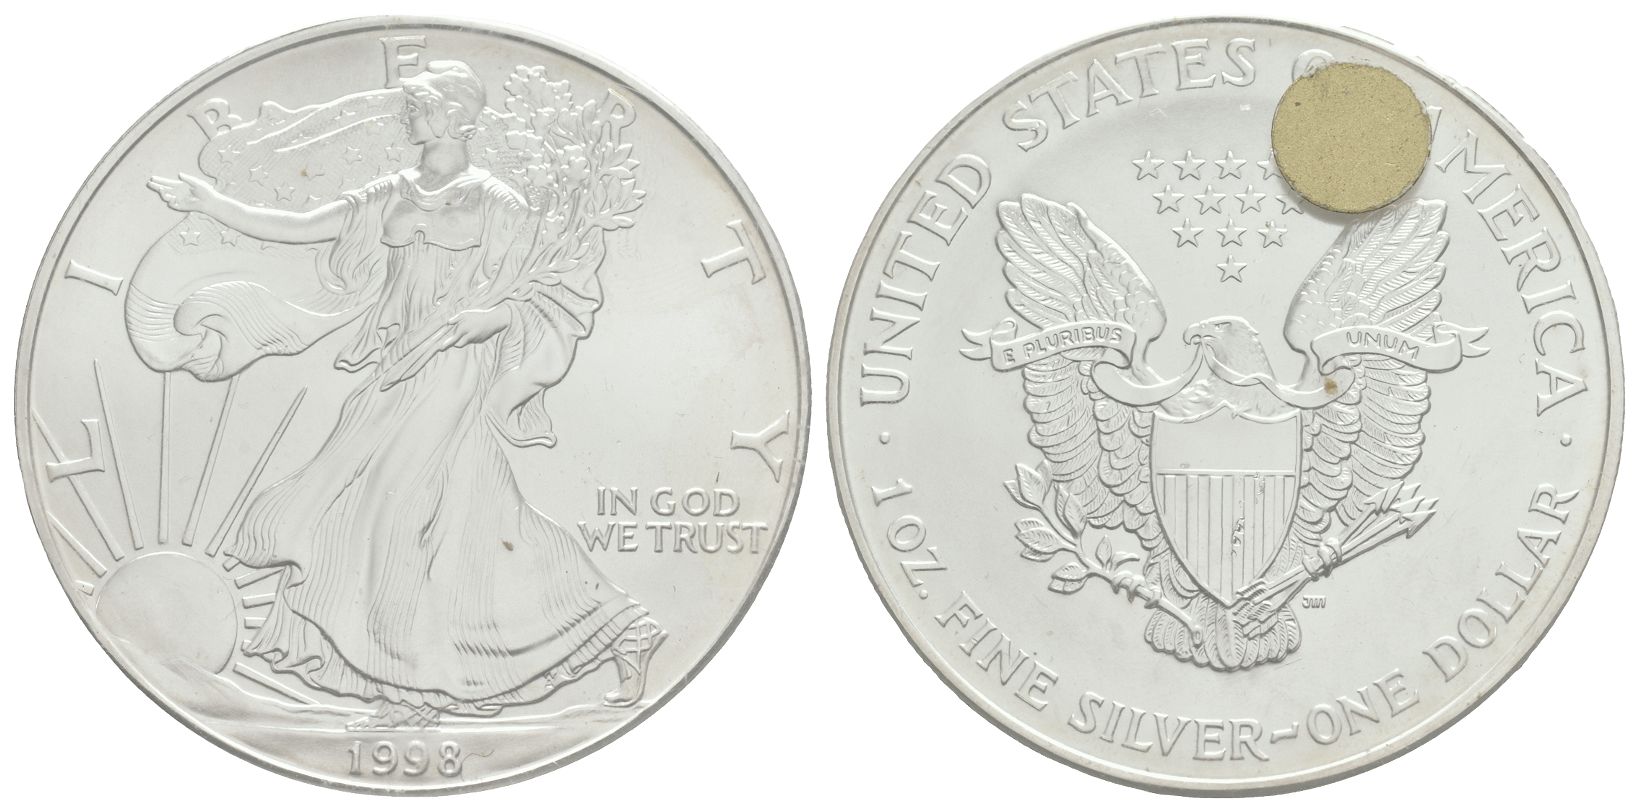 USA - 1998 - Silver Bullion 1 Ounce Dollar